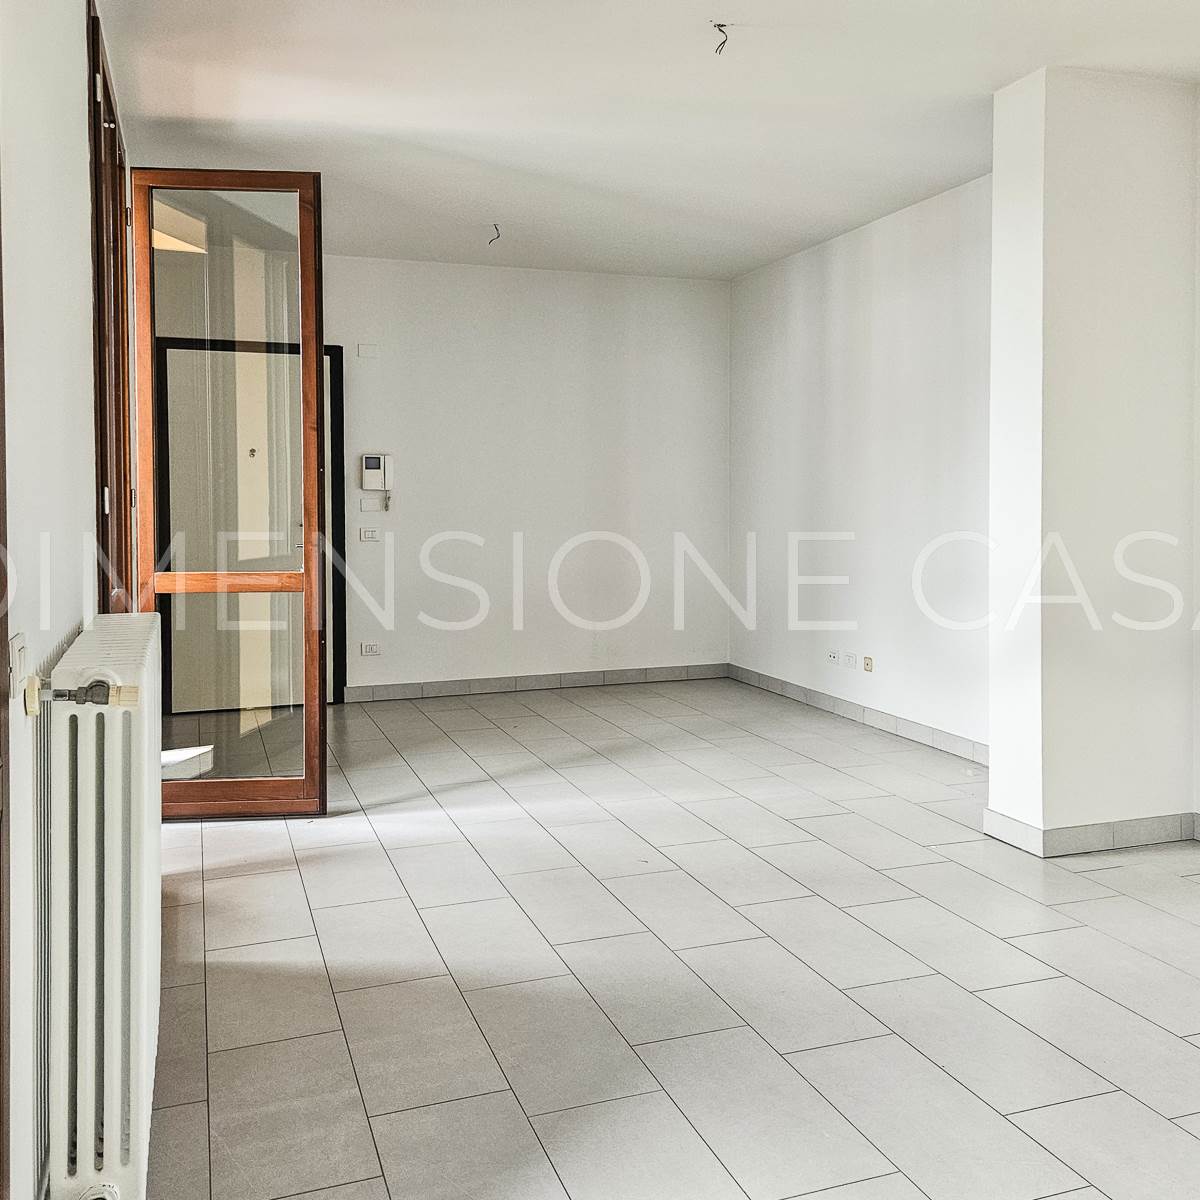 Appartamento in vendita a Carpi, 3 locali, zona Località: S.MARINO, prezzo € 165.000 | PortaleAgenzieImmobiliari.it